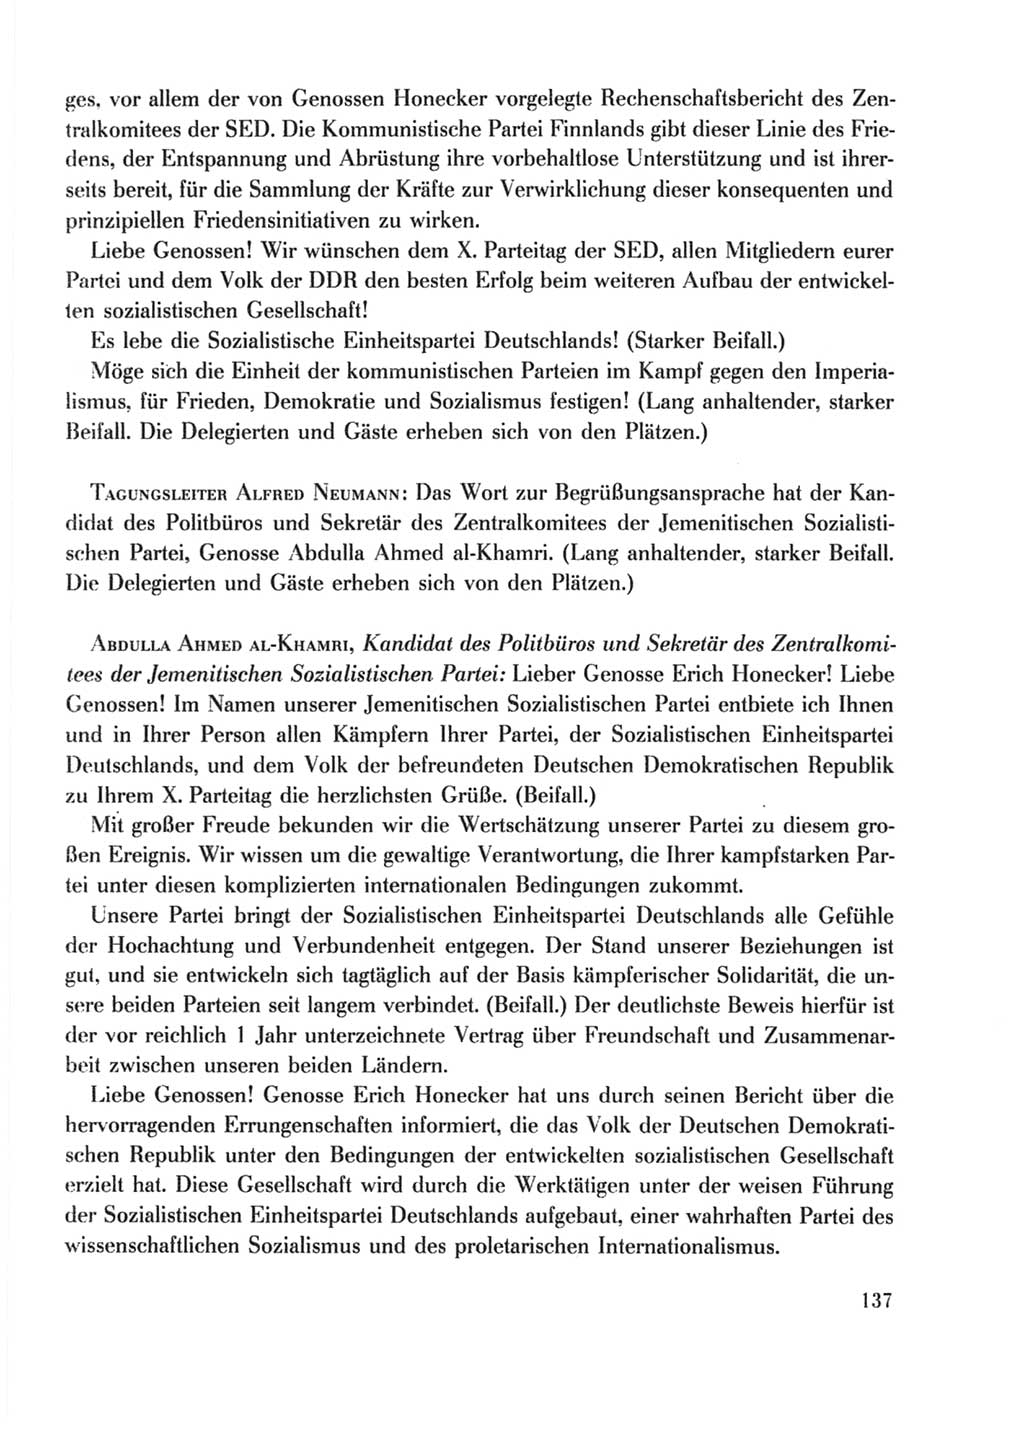 Protokoll der Verhandlungen des Ⅹ. Parteitages der Sozialistischen Einheitspartei Deutschlands (SED) [Deutsche Demokratische Republik (DDR)] 1981, Band 2, Seite 137 (Prot. Verh. Ⅹ. PT SED DDR 1981, Bd. 2, S. 137)